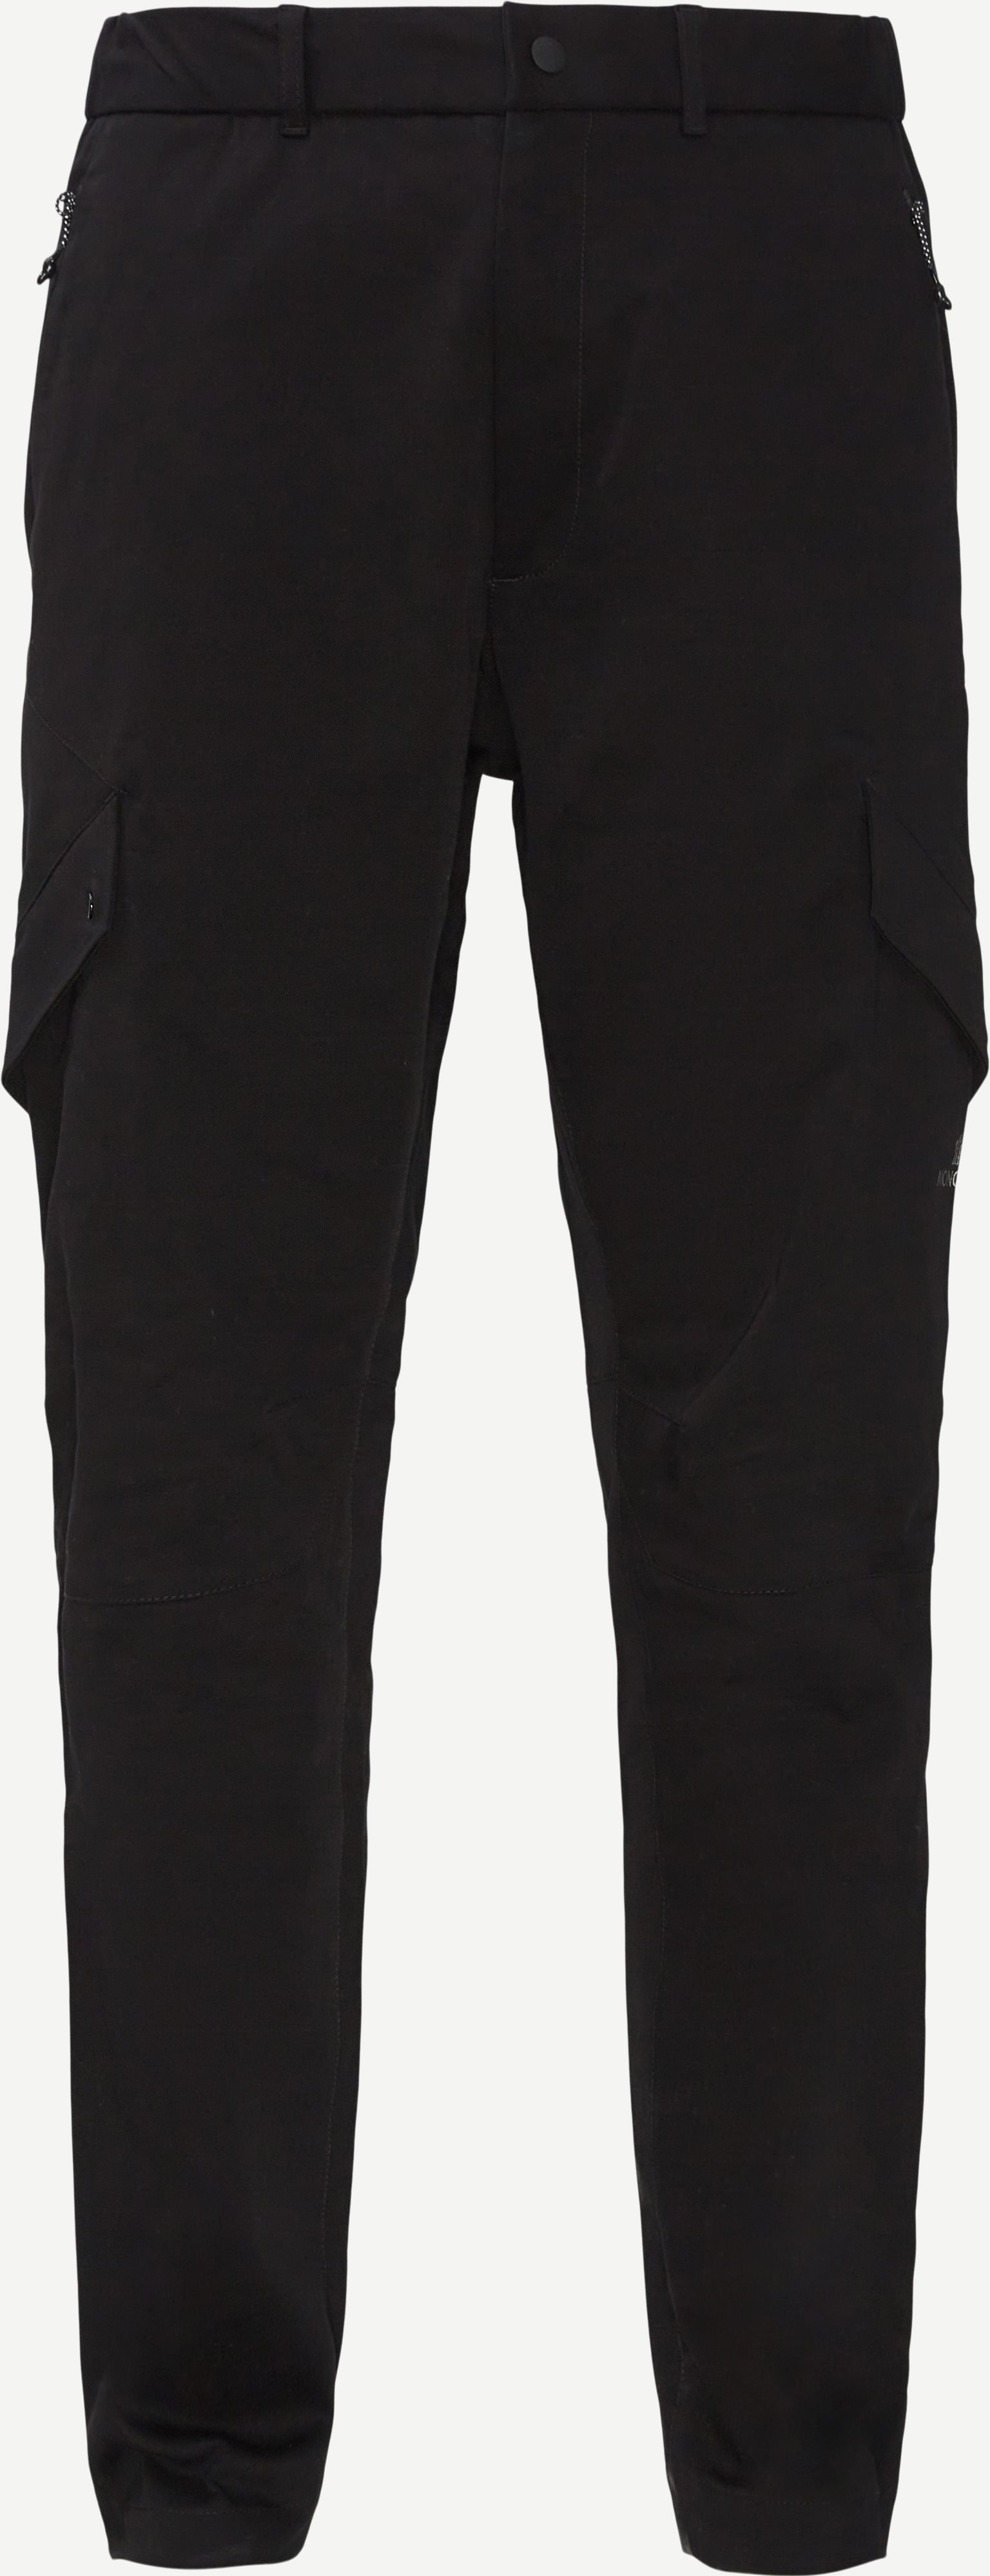 Pantalone Sportivo Cargo Pants - Bukser - Regular fit - Sort